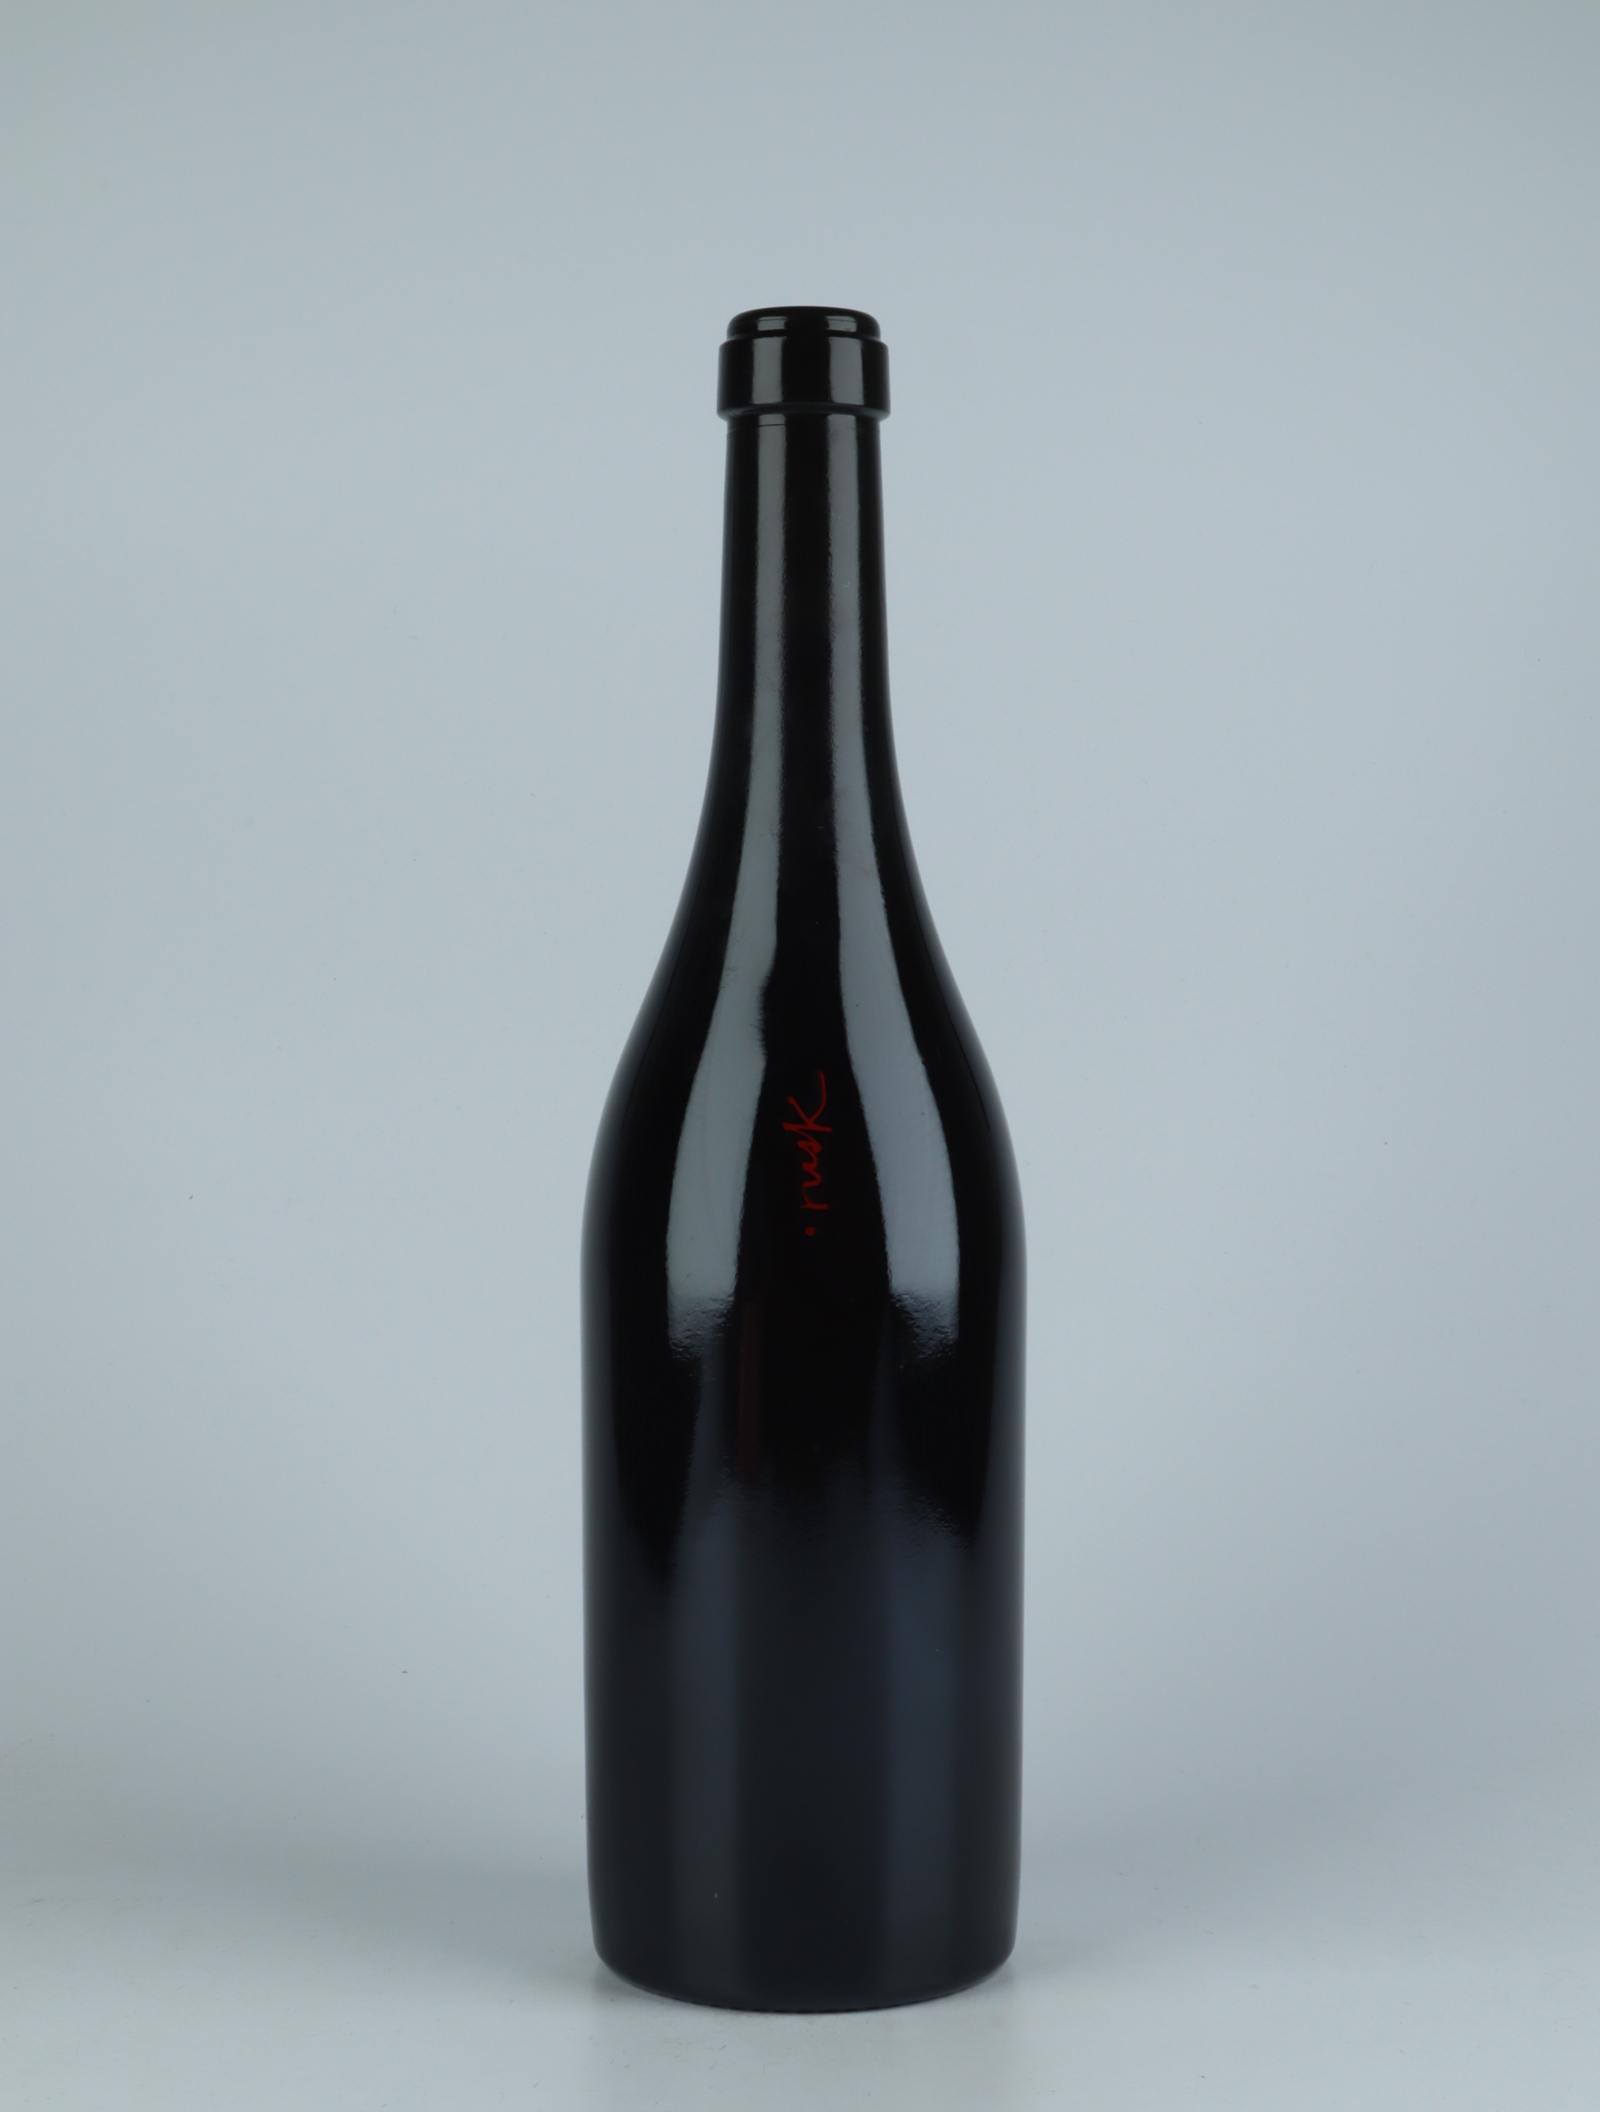 En flaske 2020 Rusk Rødvin fra Els Jelipins, Penedès i Spanien